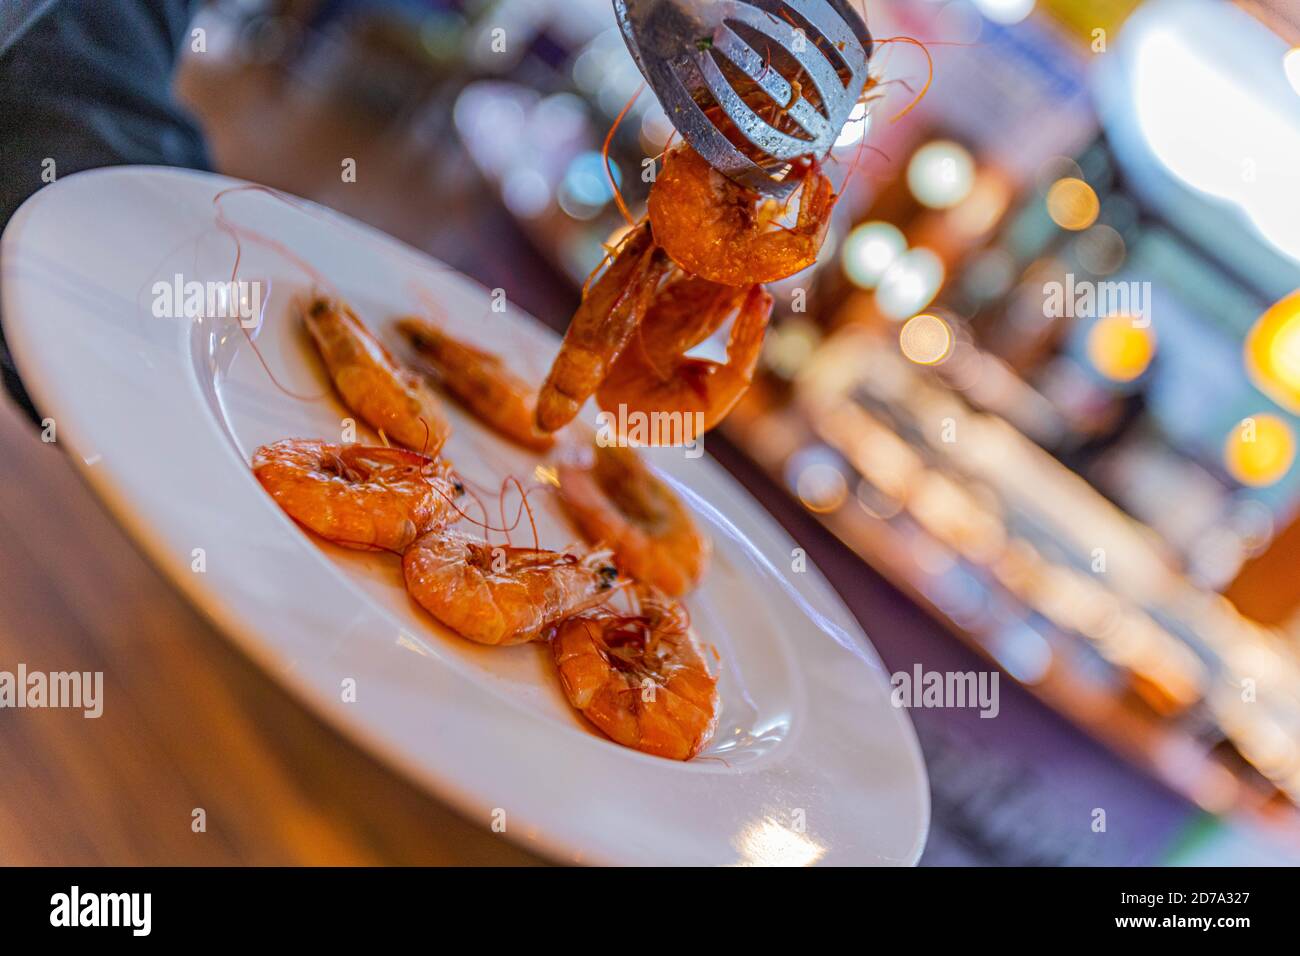 Crevettes fraîches cuites sur une assiette blanche, plat. Fruits de mer concept alimentaire sain Banque D'Images